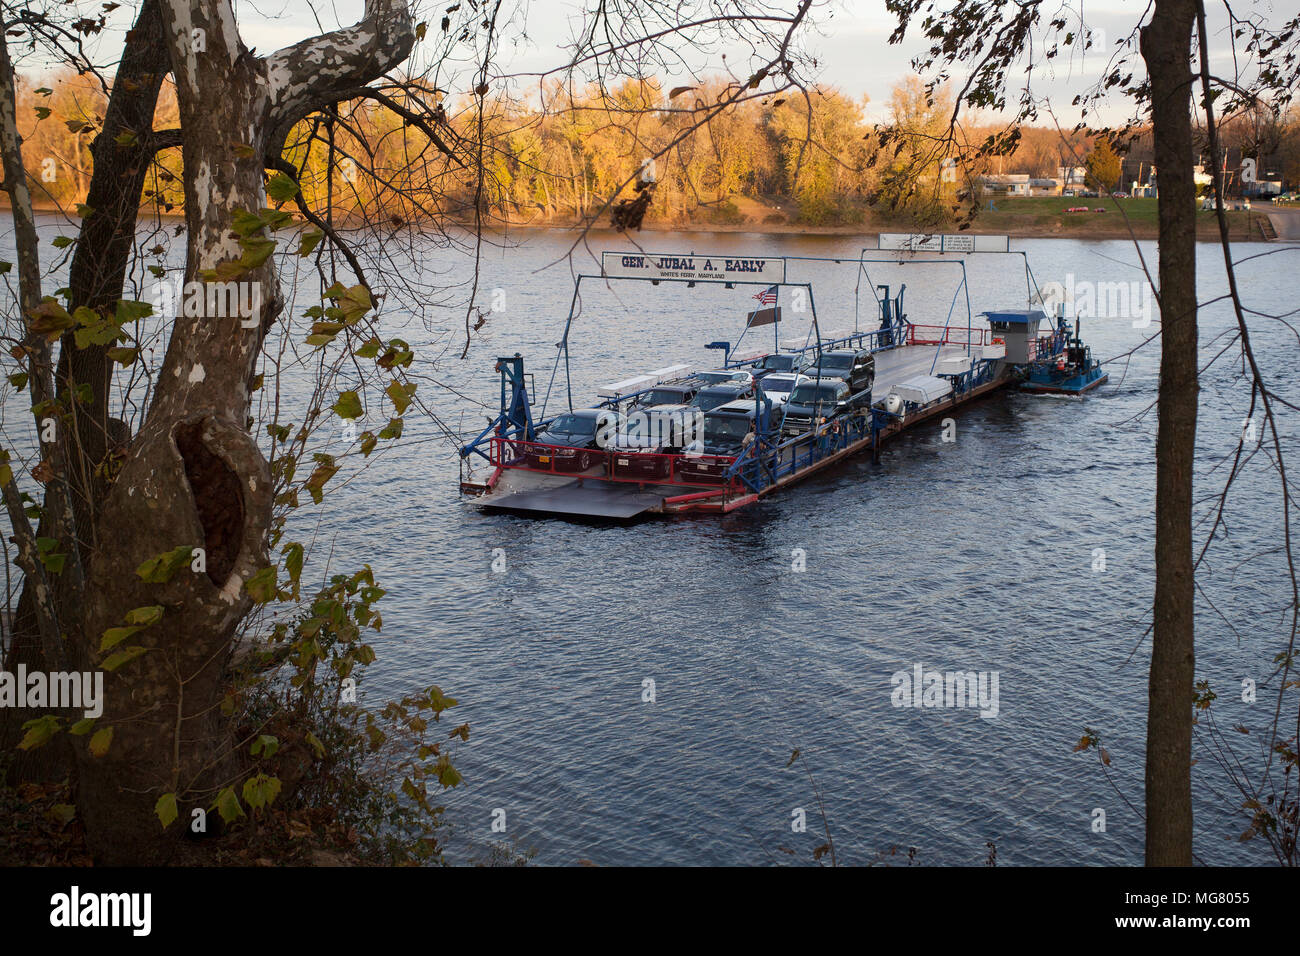 Histórico del blanco en Maryland Poolesville ferry cruzando el río Potomac. El ferry sigue un cable al otro lado del río Foto de stock